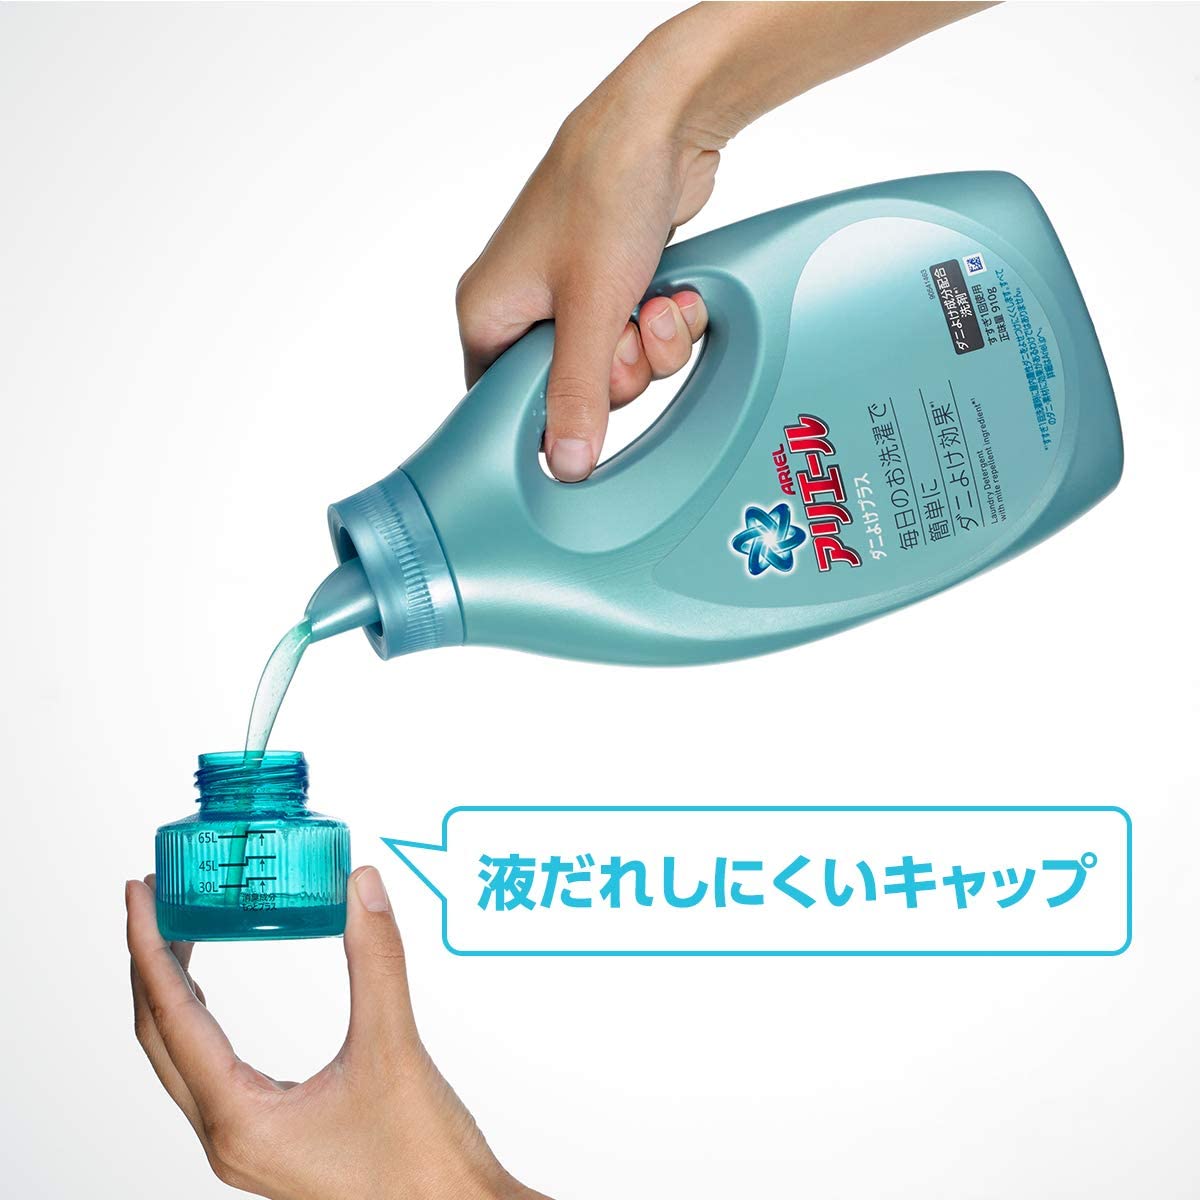 P&G ARIEL 日本超濃縮抗菌抗蟎洗衣 910g